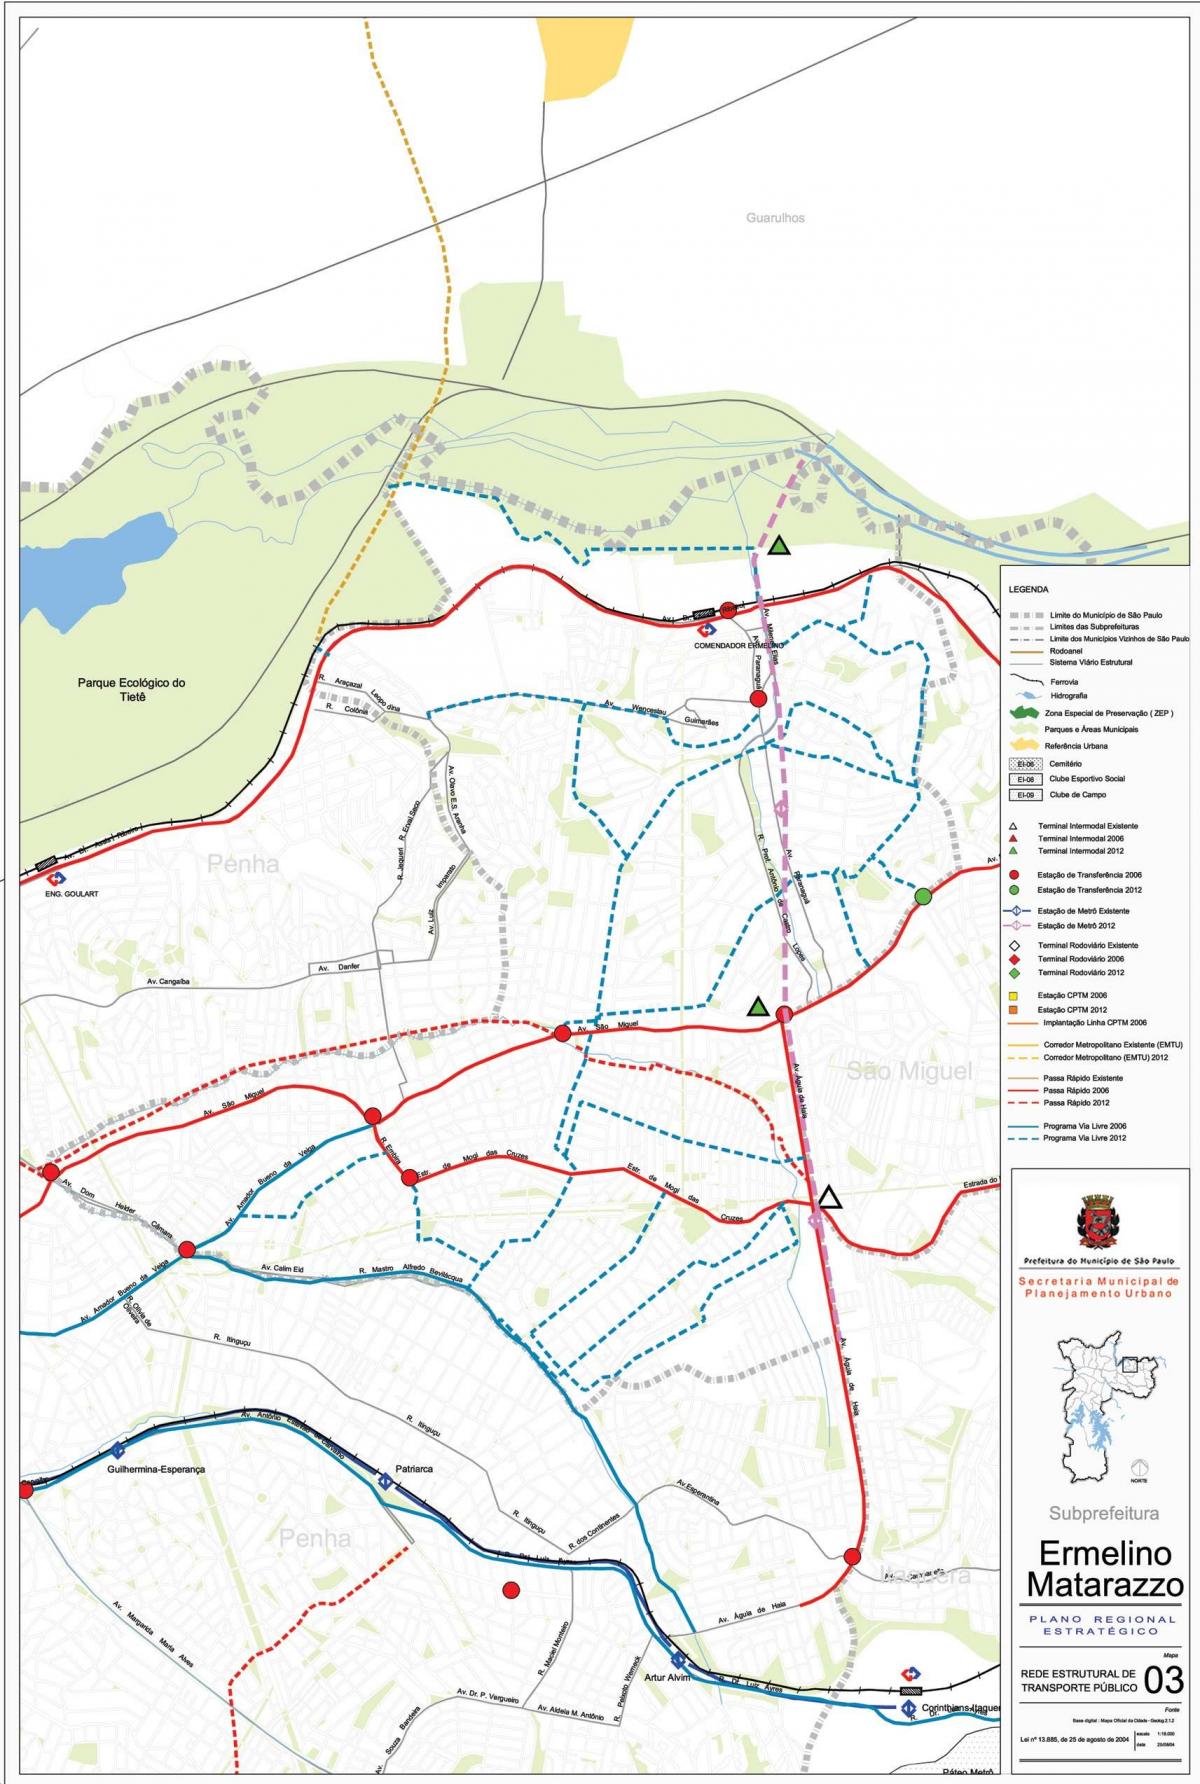 નકશો Ermelino Matarazzo સાઓ પાઉલો - જાહેર પરિવહન